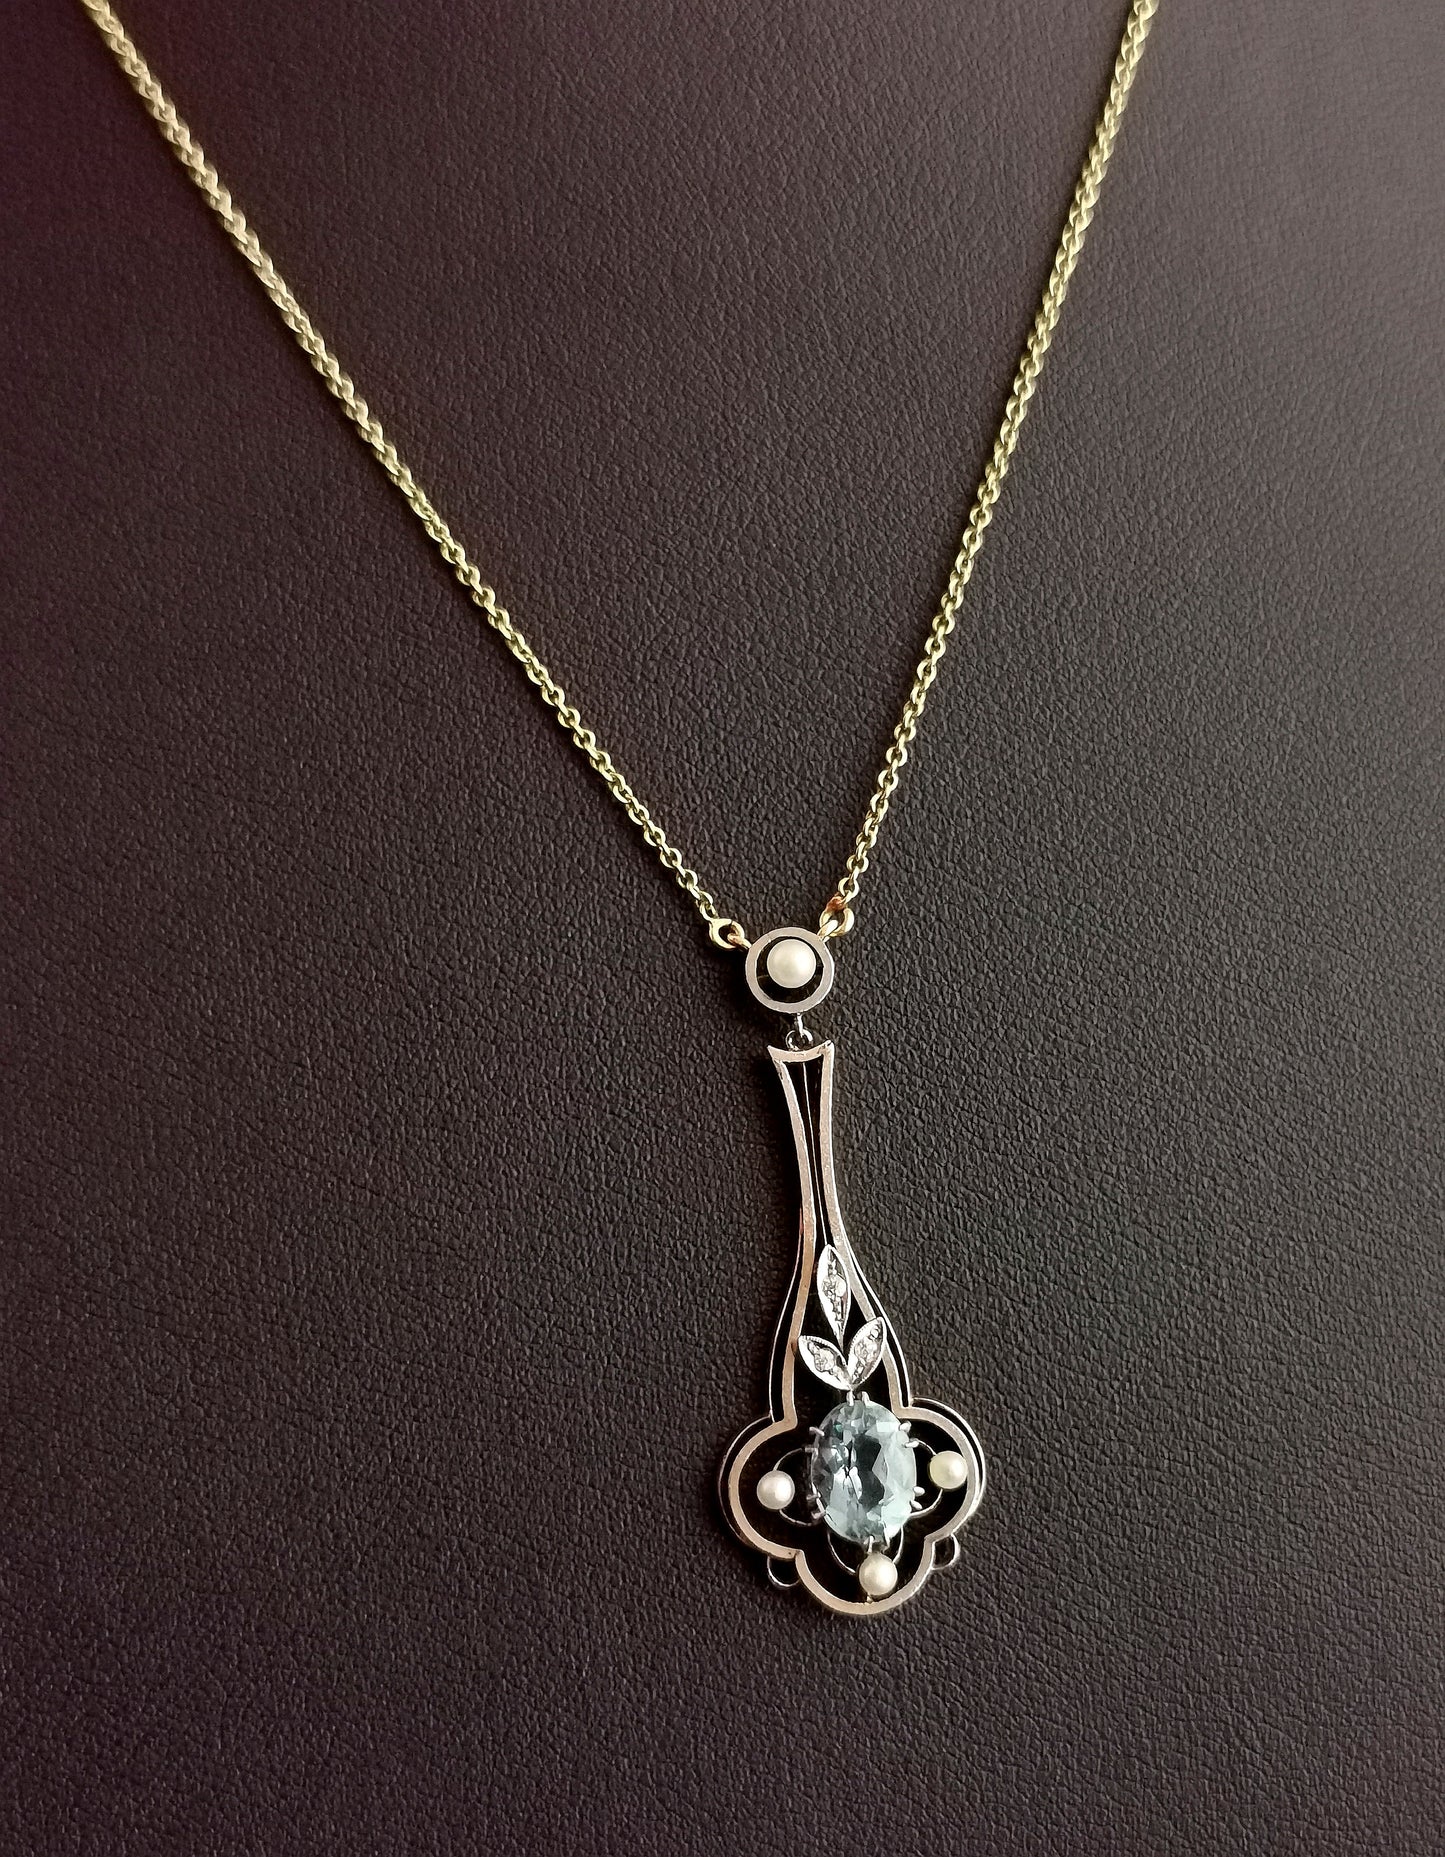 Art Deco pendant necklace, Aquamarine, diamond and pearl, platinum and 15ct gold